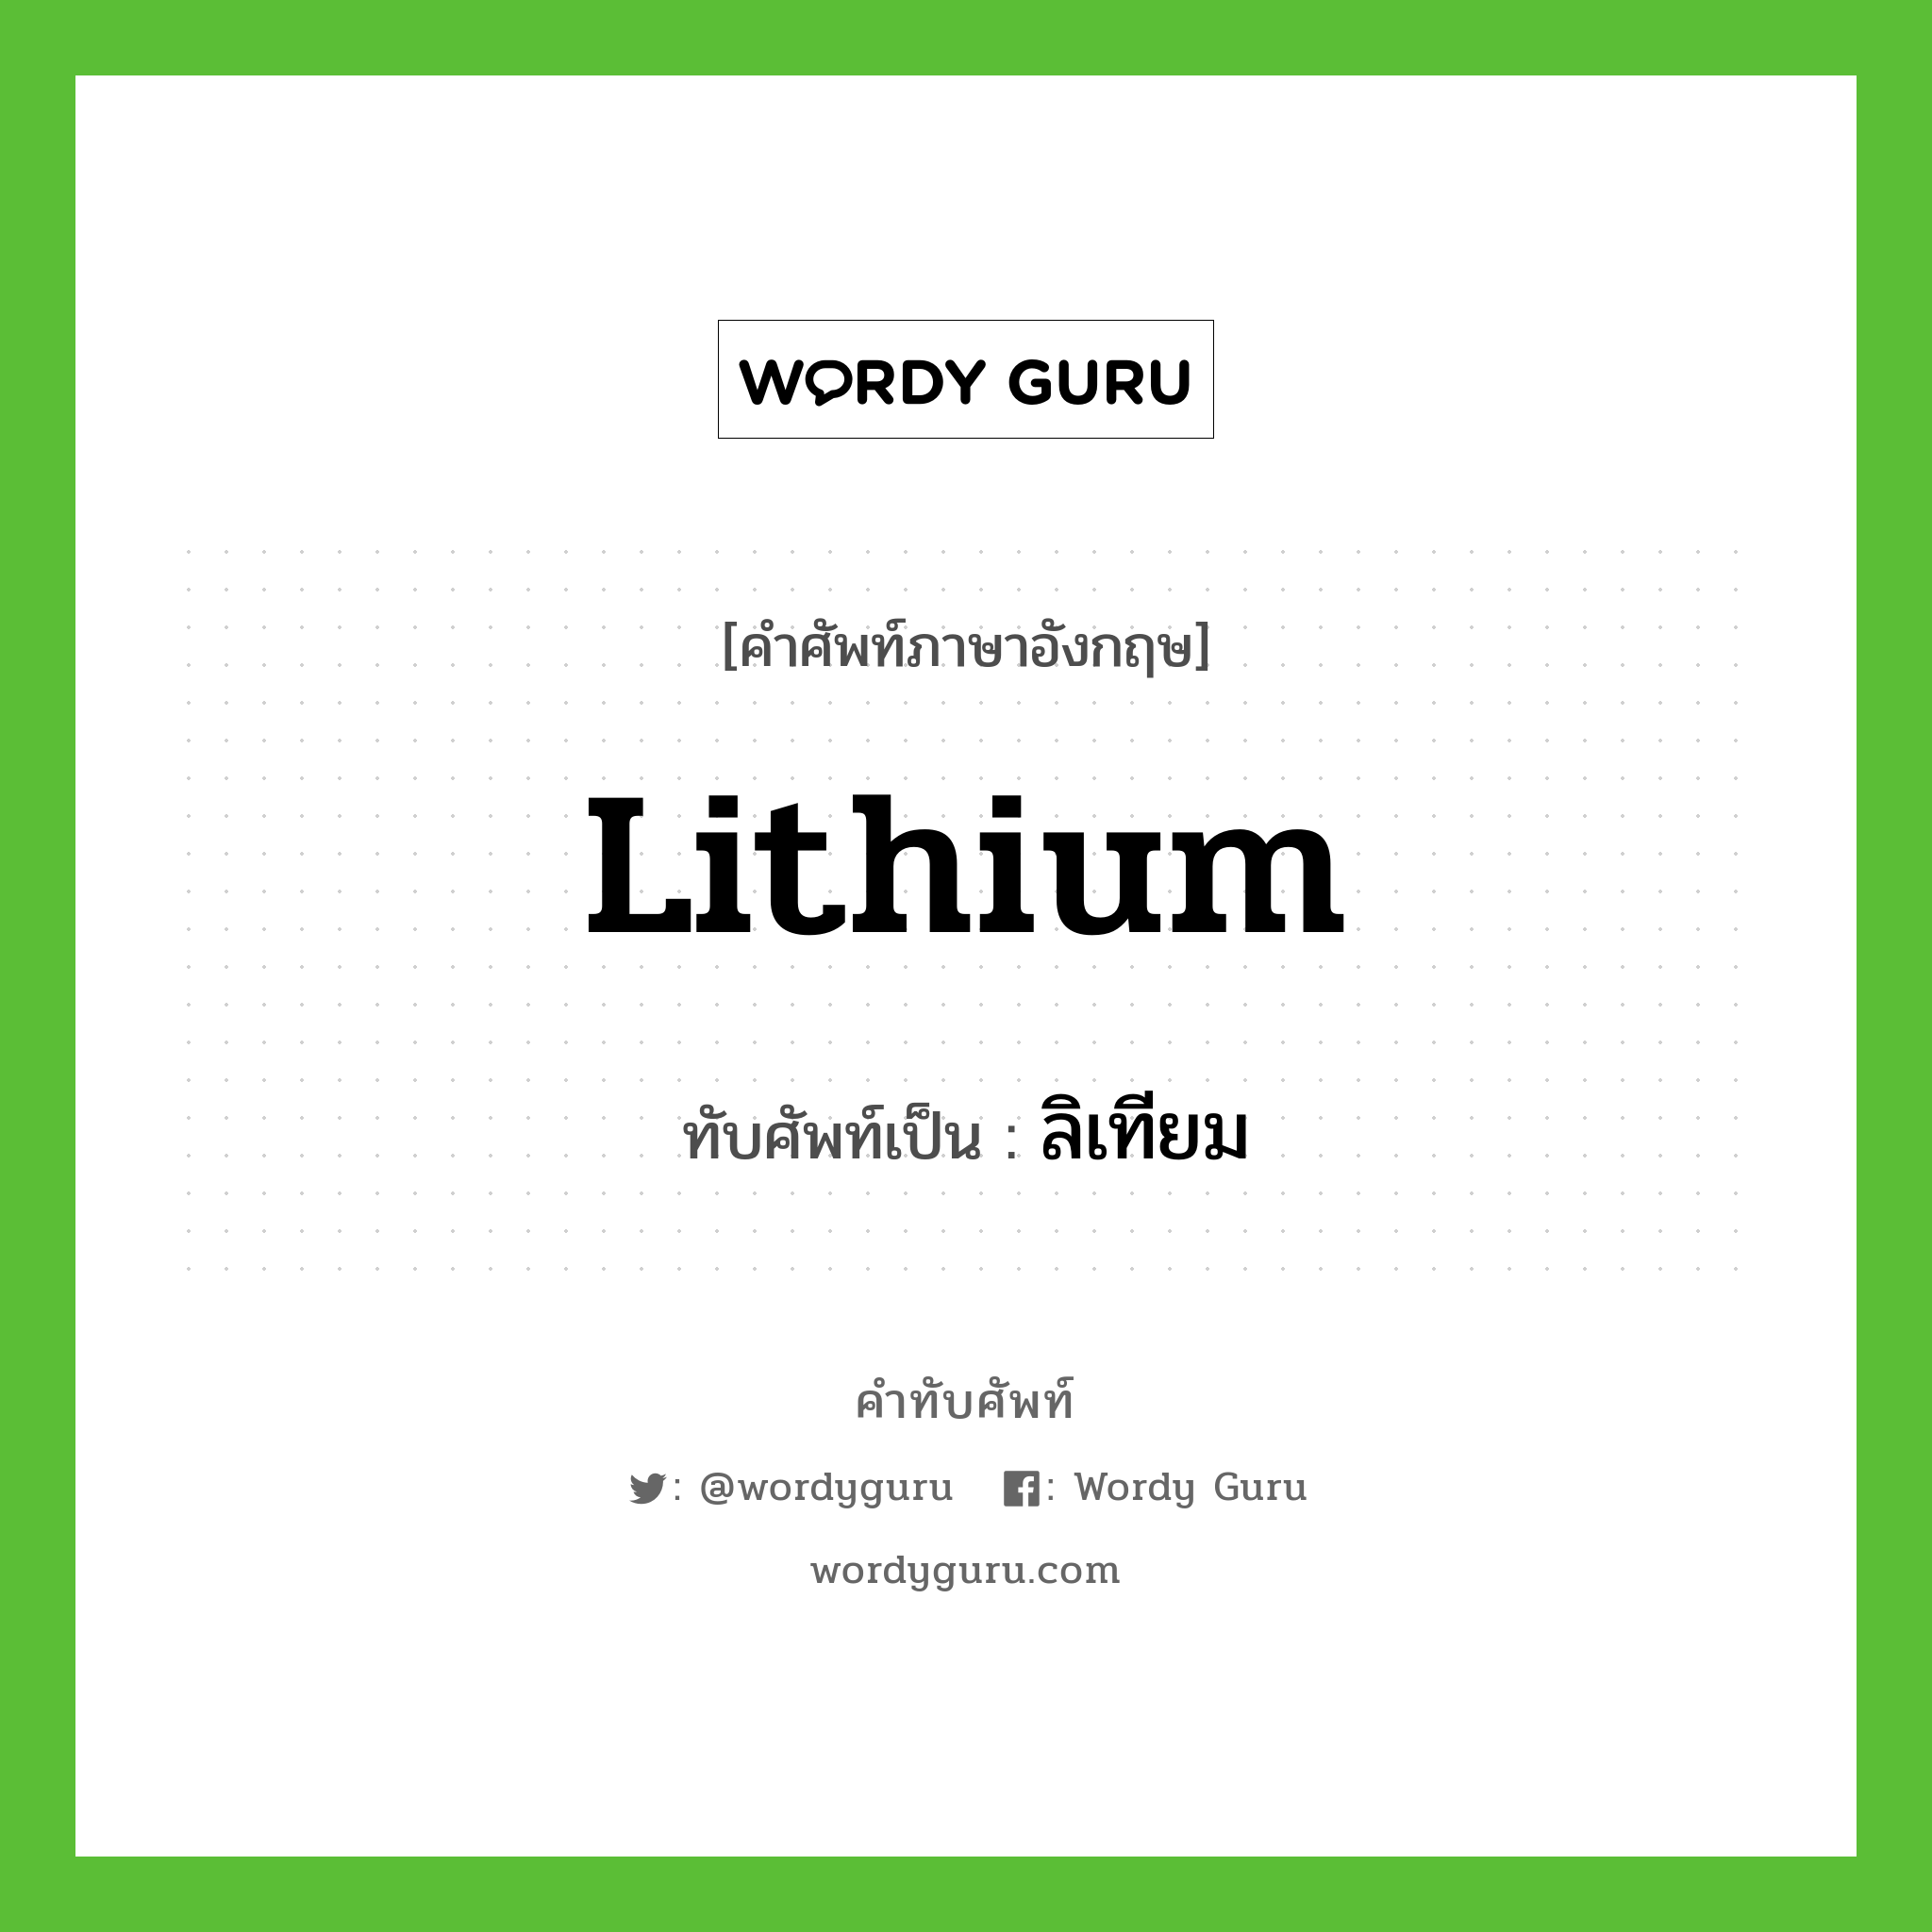 ลิเทียม เขียนอย่างไร?, คำศัพท์ภาษาอังกฤษ ลิเทียม ทับศัพท์เป็น lithium